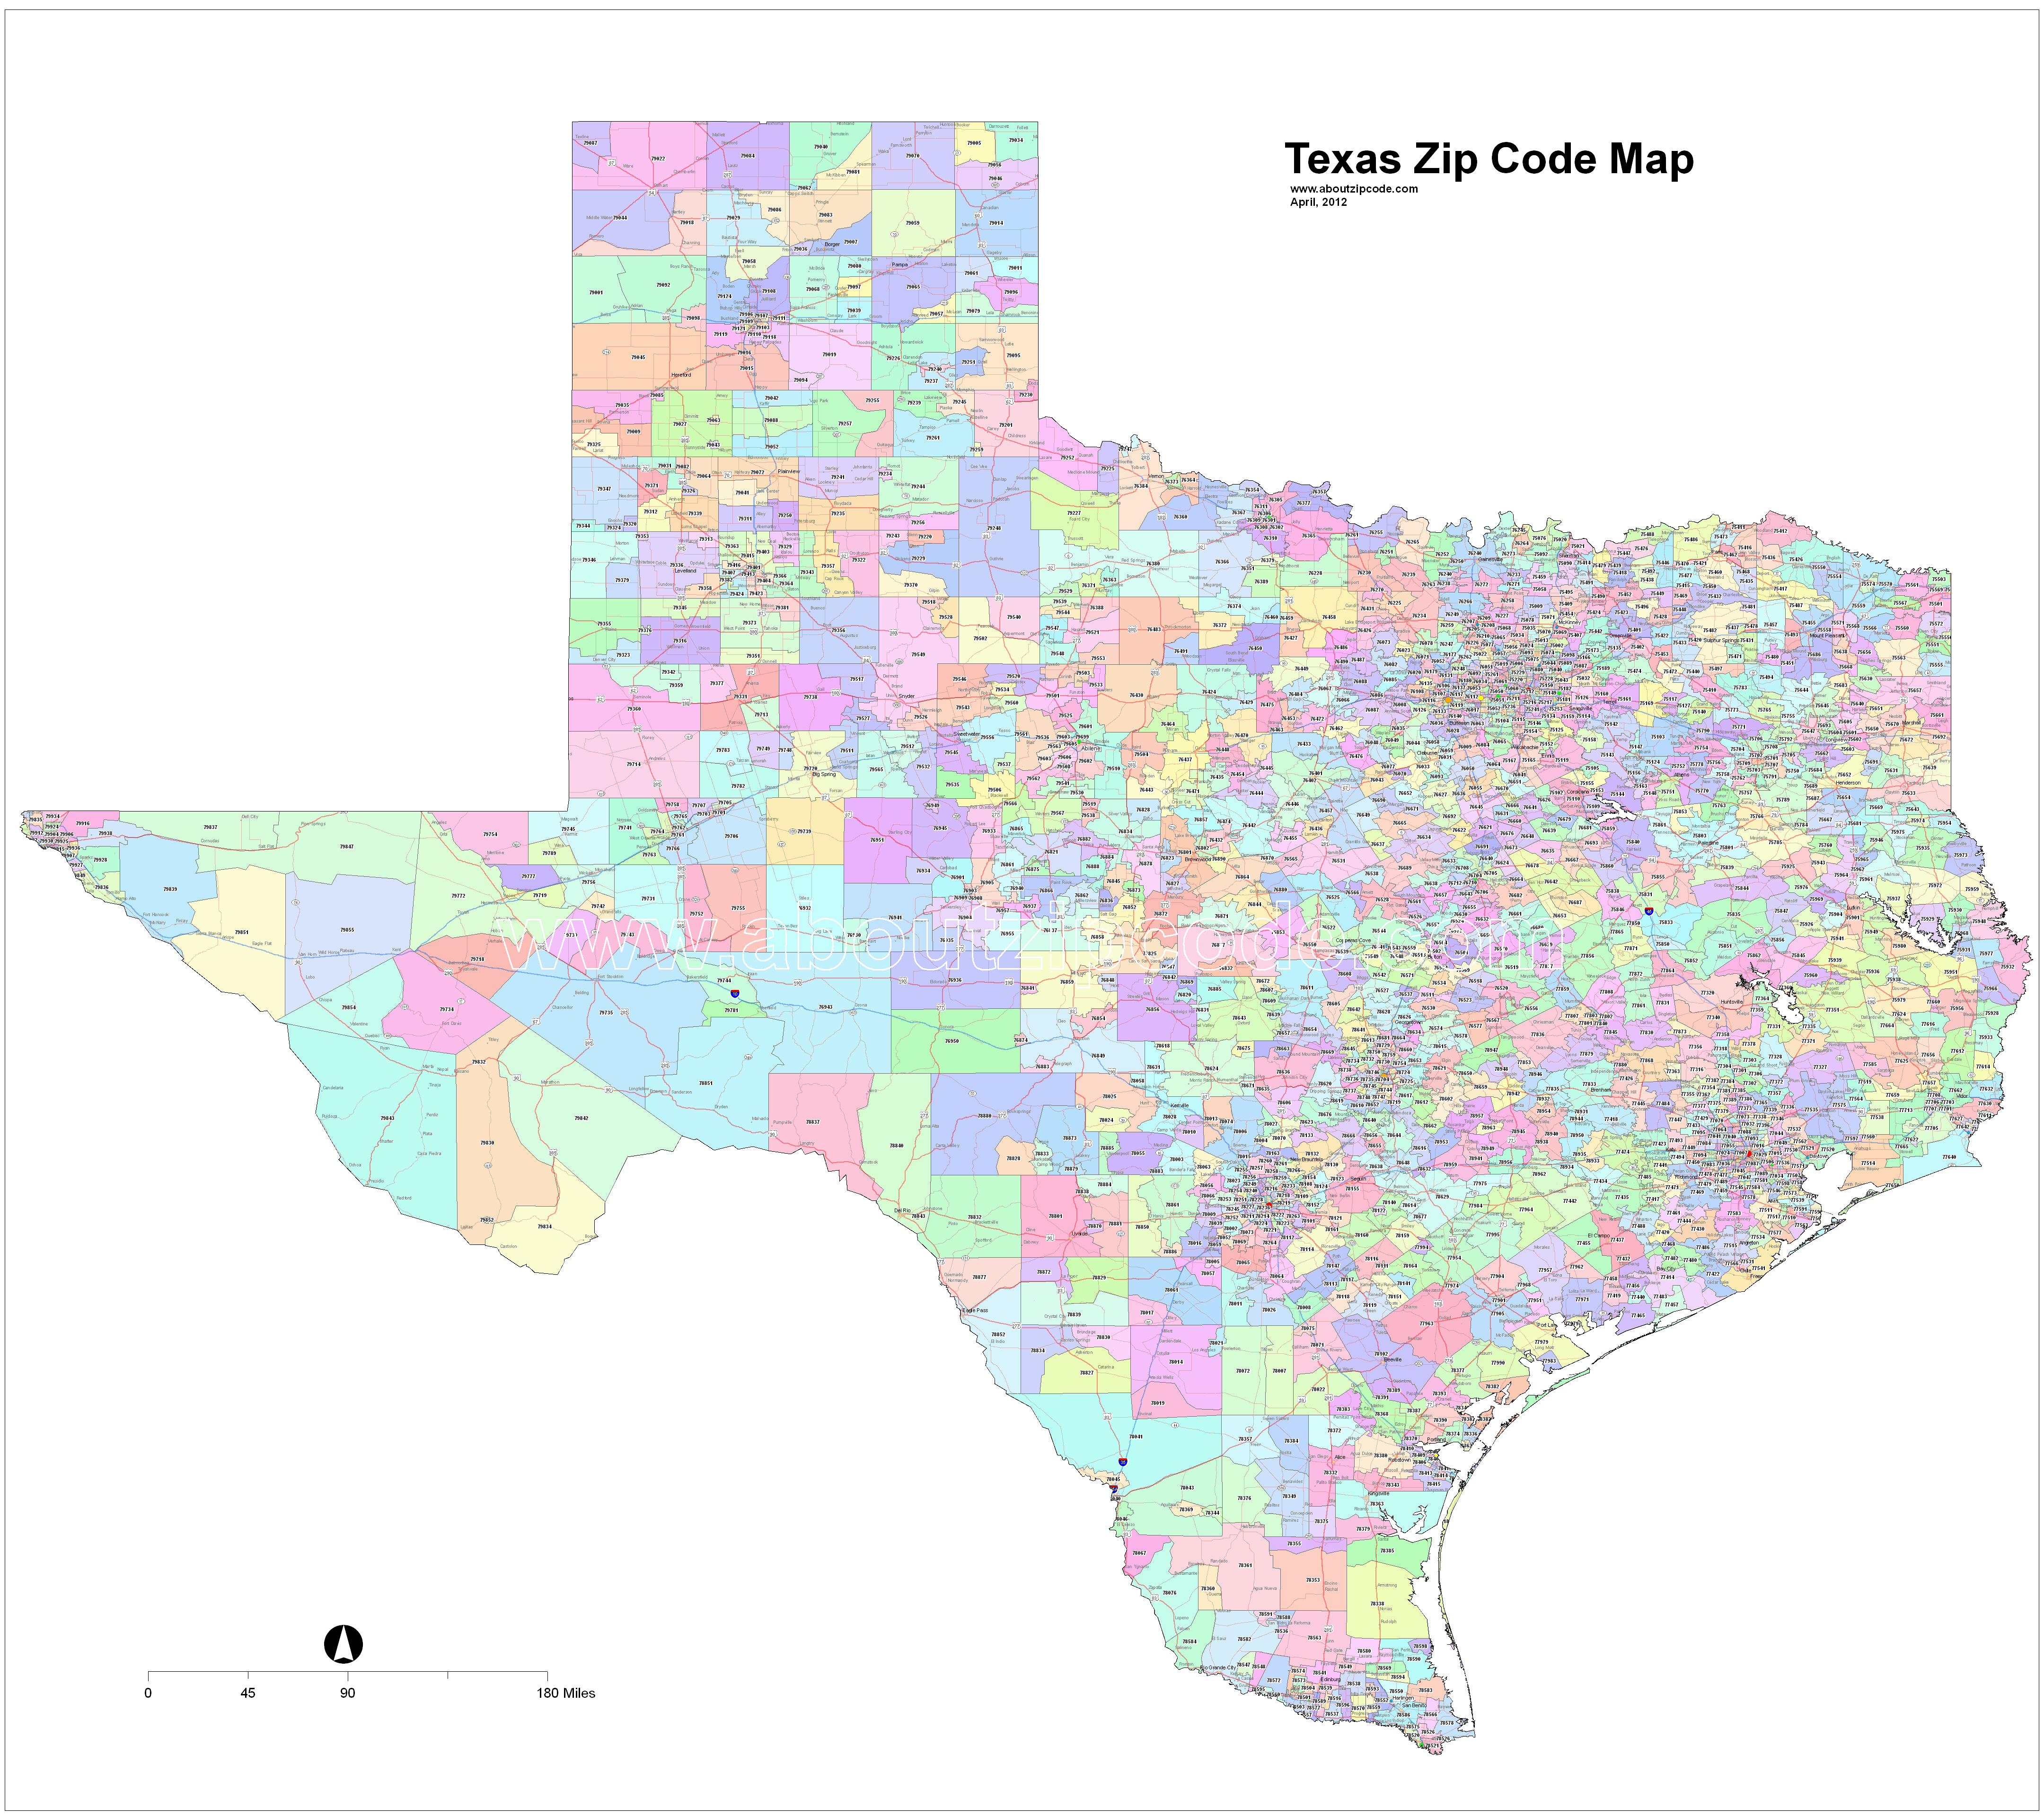 denison tx zip code map Texas Zip Code Maps Free Texas Zip Code Maps denison tx zip code map